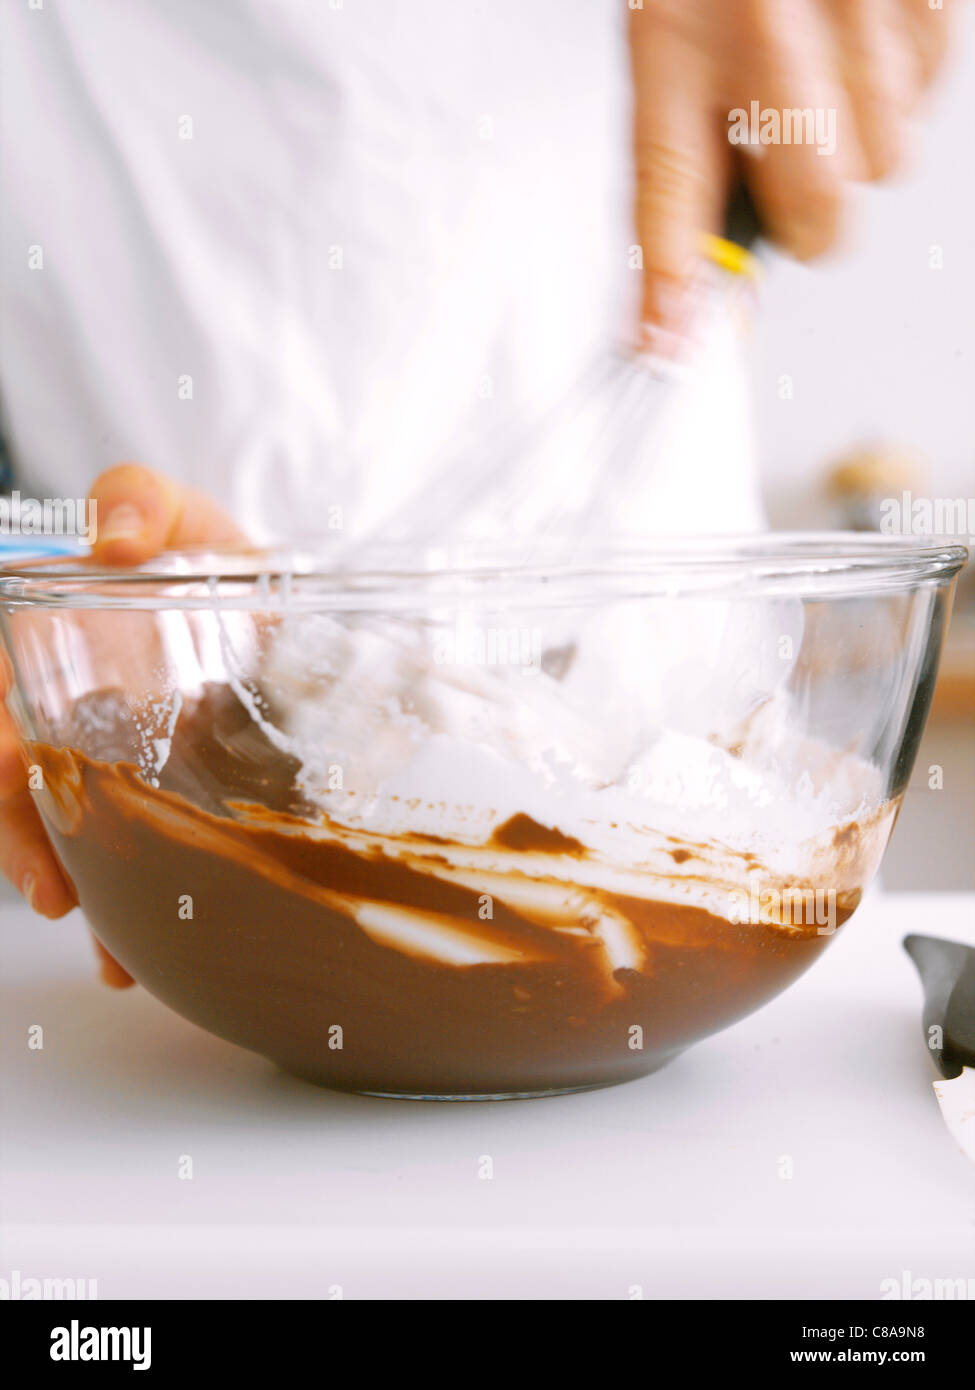 Adding the beaten egg whites to the chocolate mixture Stock Photo